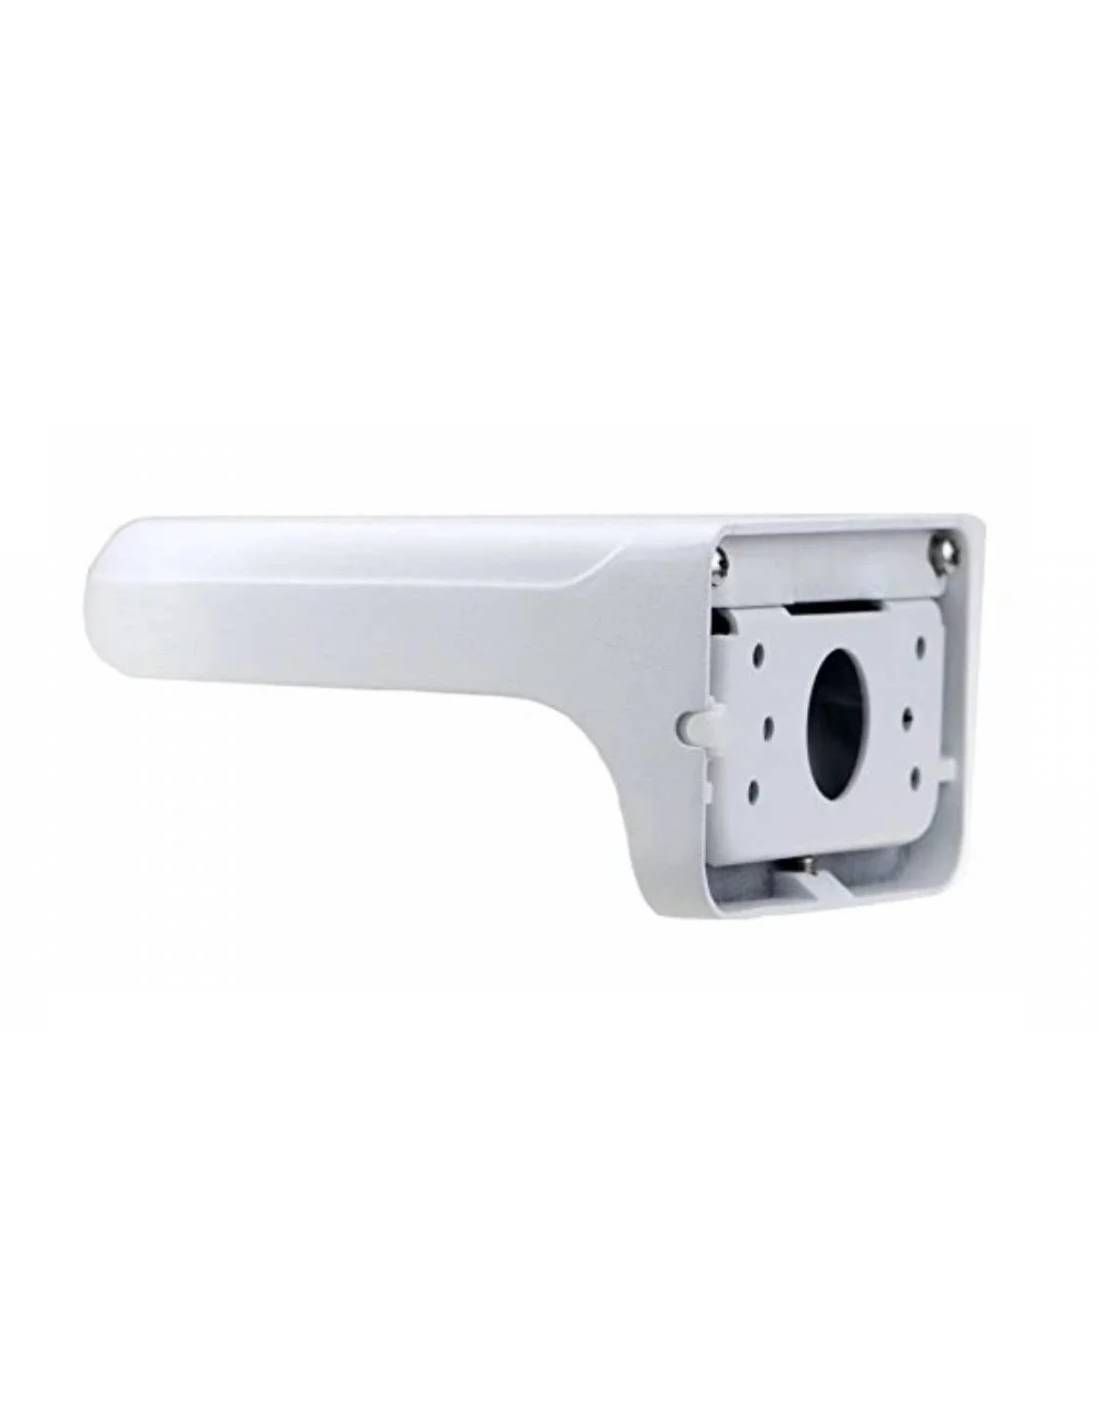 Soporte de pared Safire Smart - Para cámaras domo - Apto para uso exterior  - Aleación de aluminio - Diámetro base 119.6 mm - Guía cable - PT REFORMA